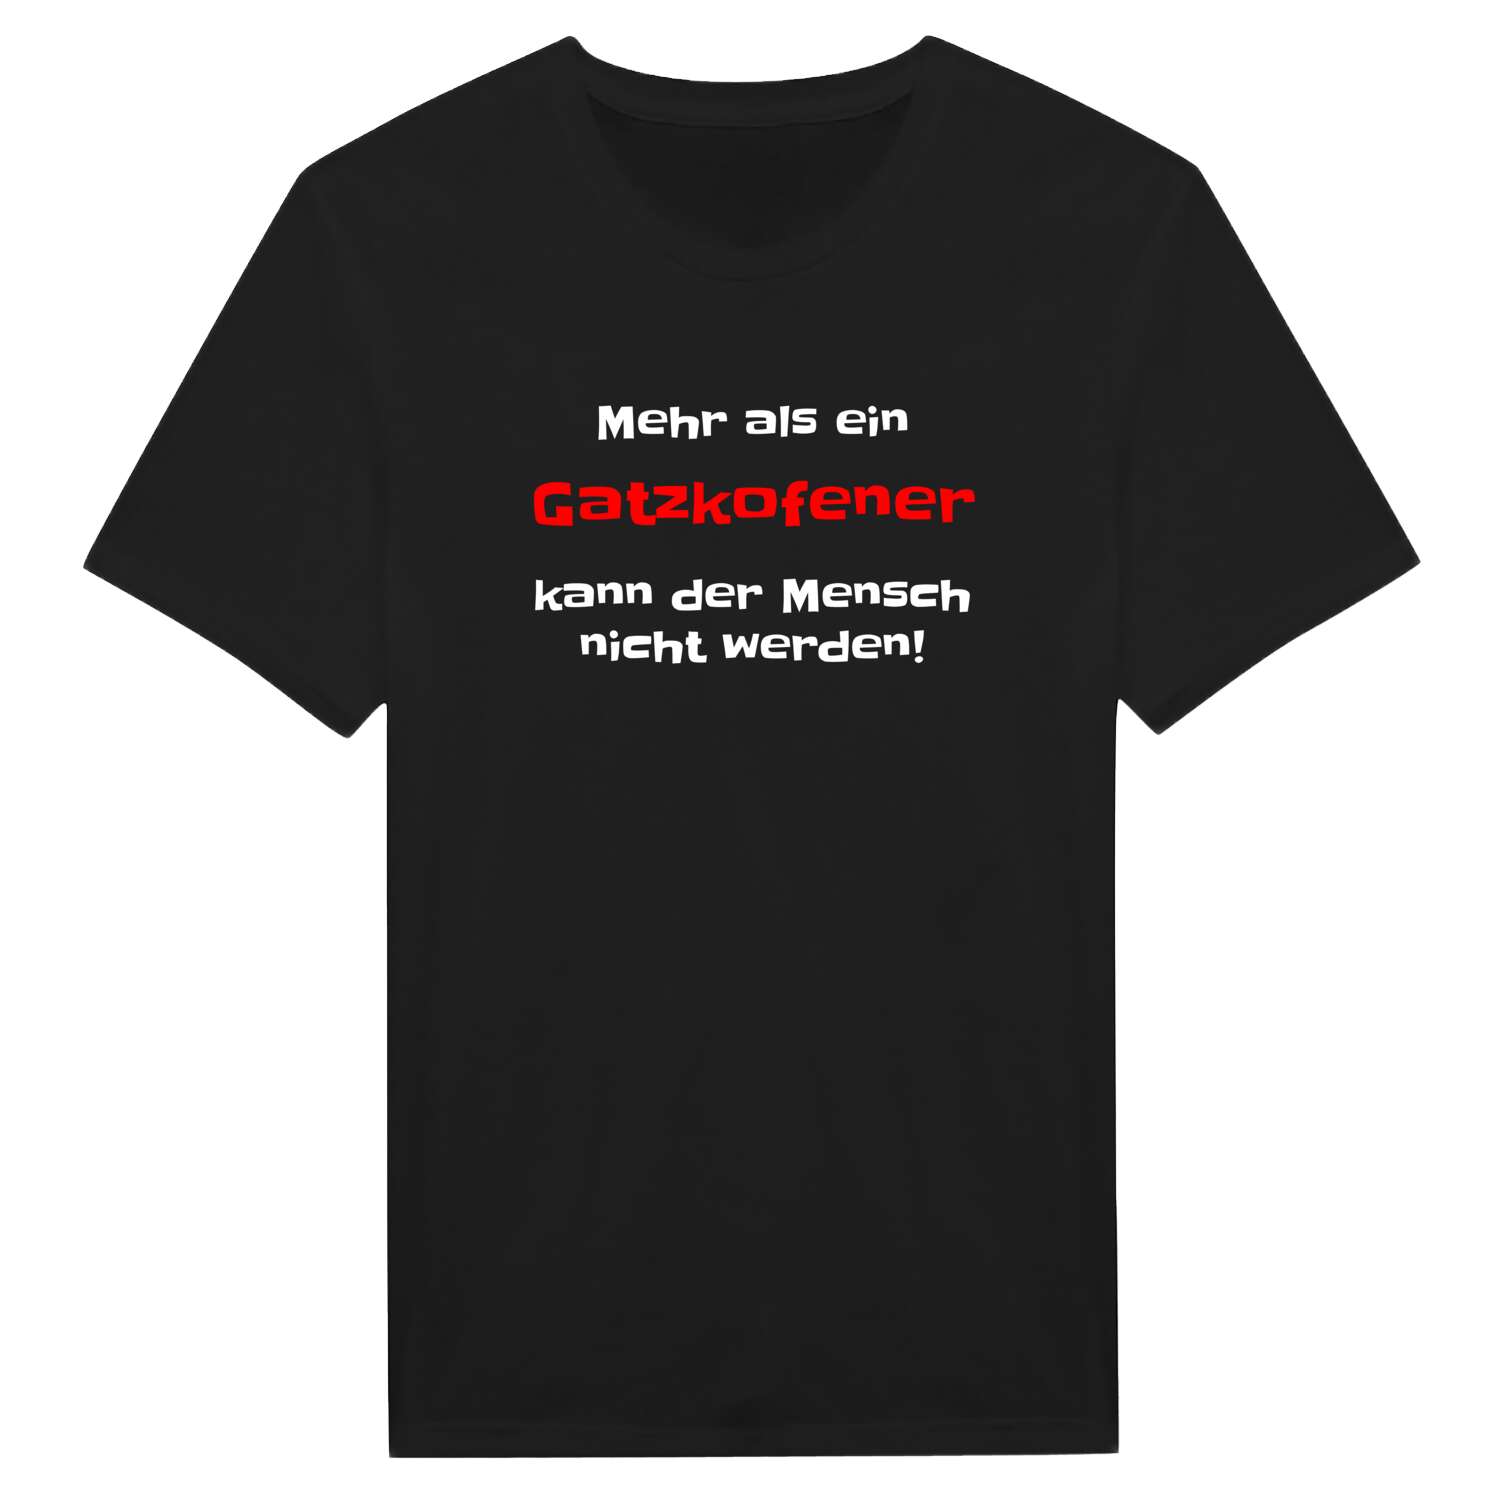 Gatzkofen T-Shirt »Mehr als ein«